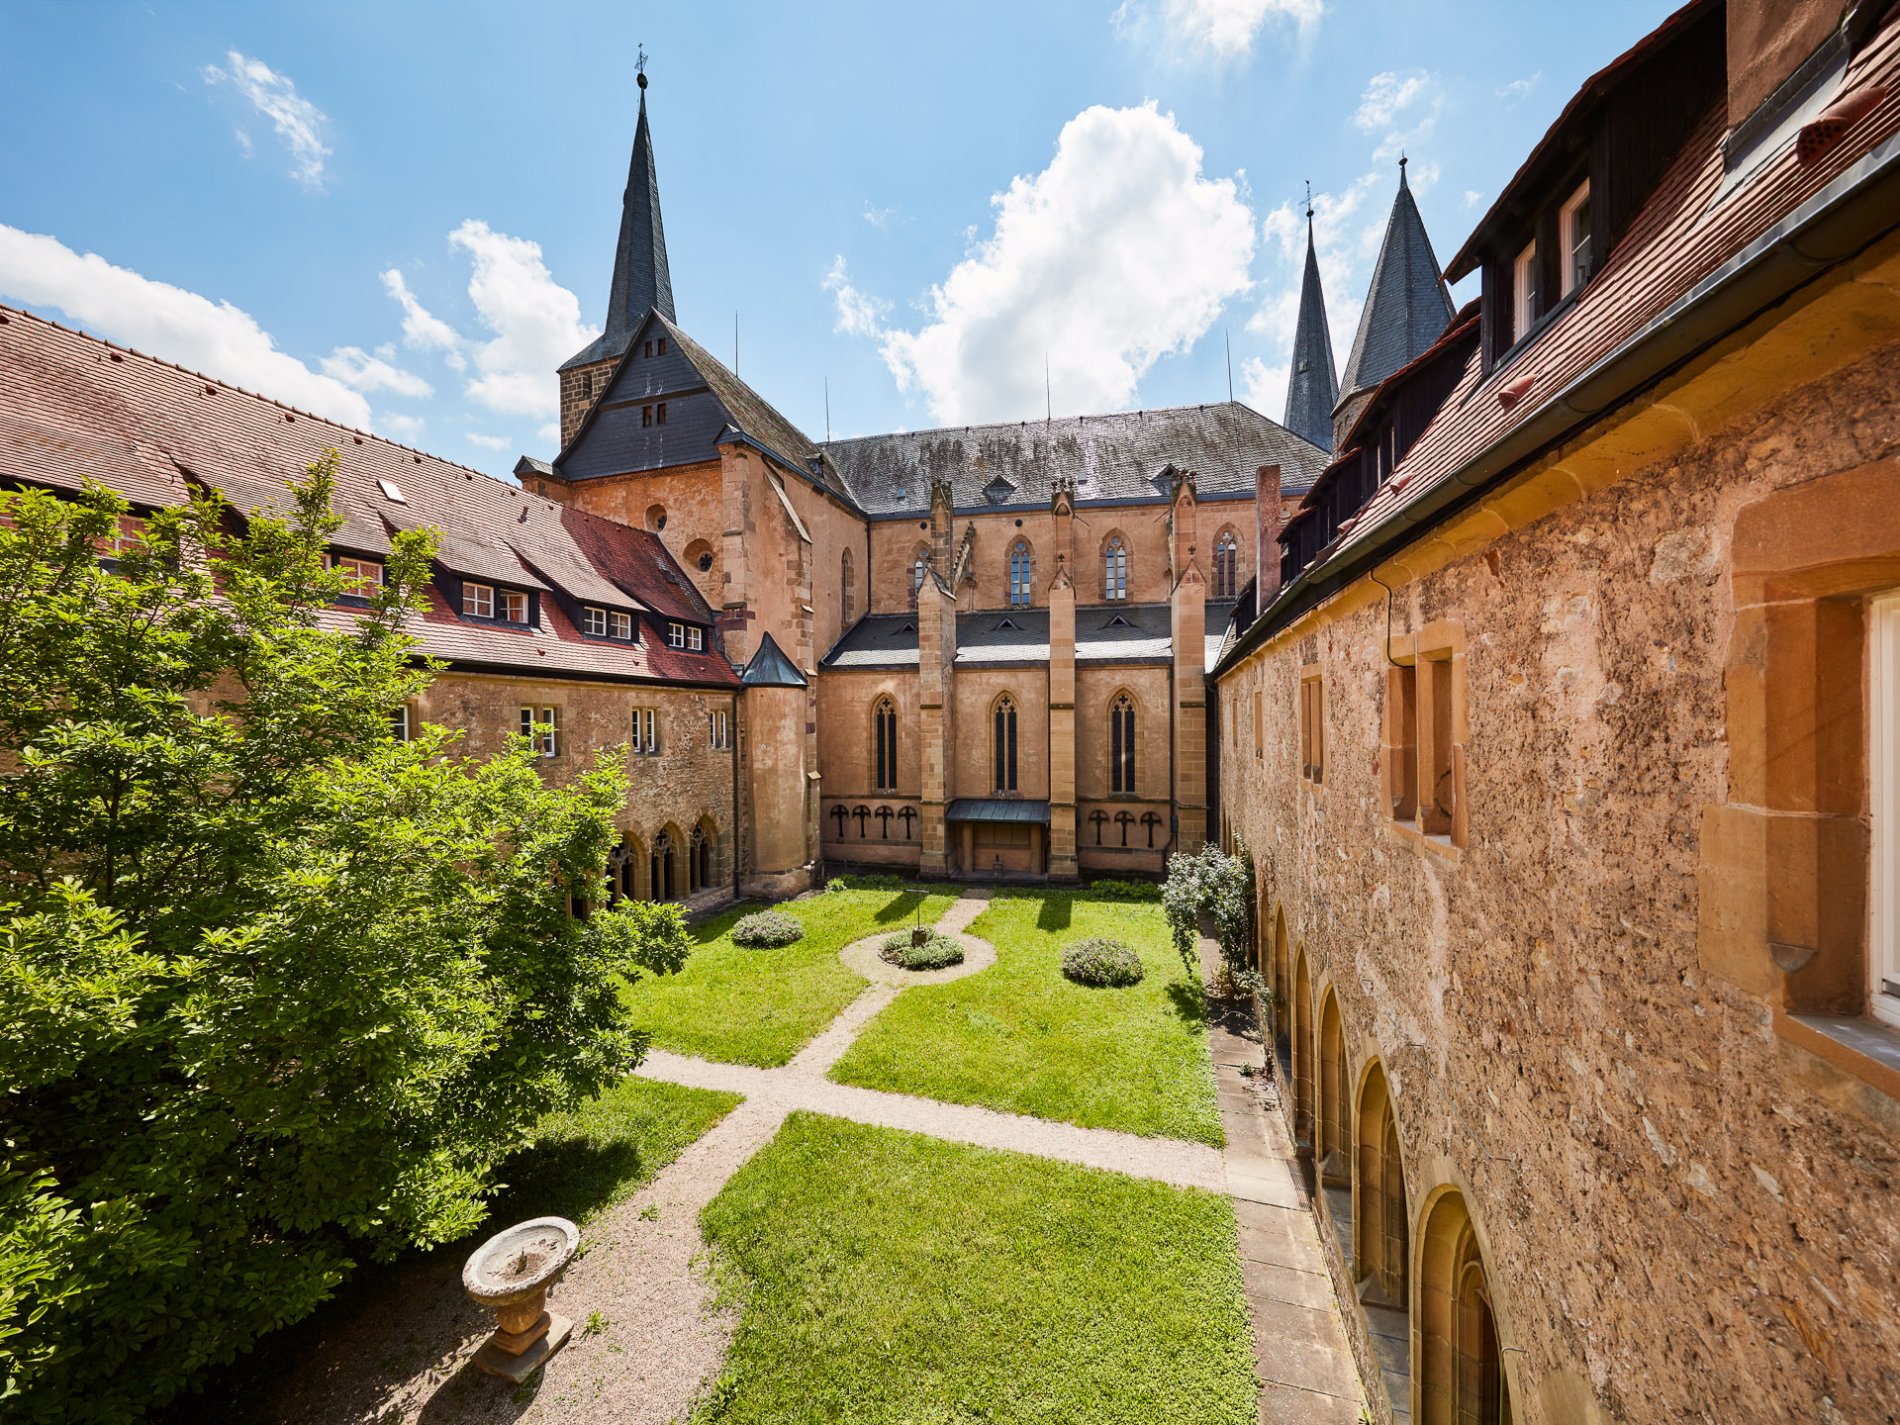 Kloster Bad Wimpfen im Tal | Innenhof mit Kreuzgang | HeilbronnerLand